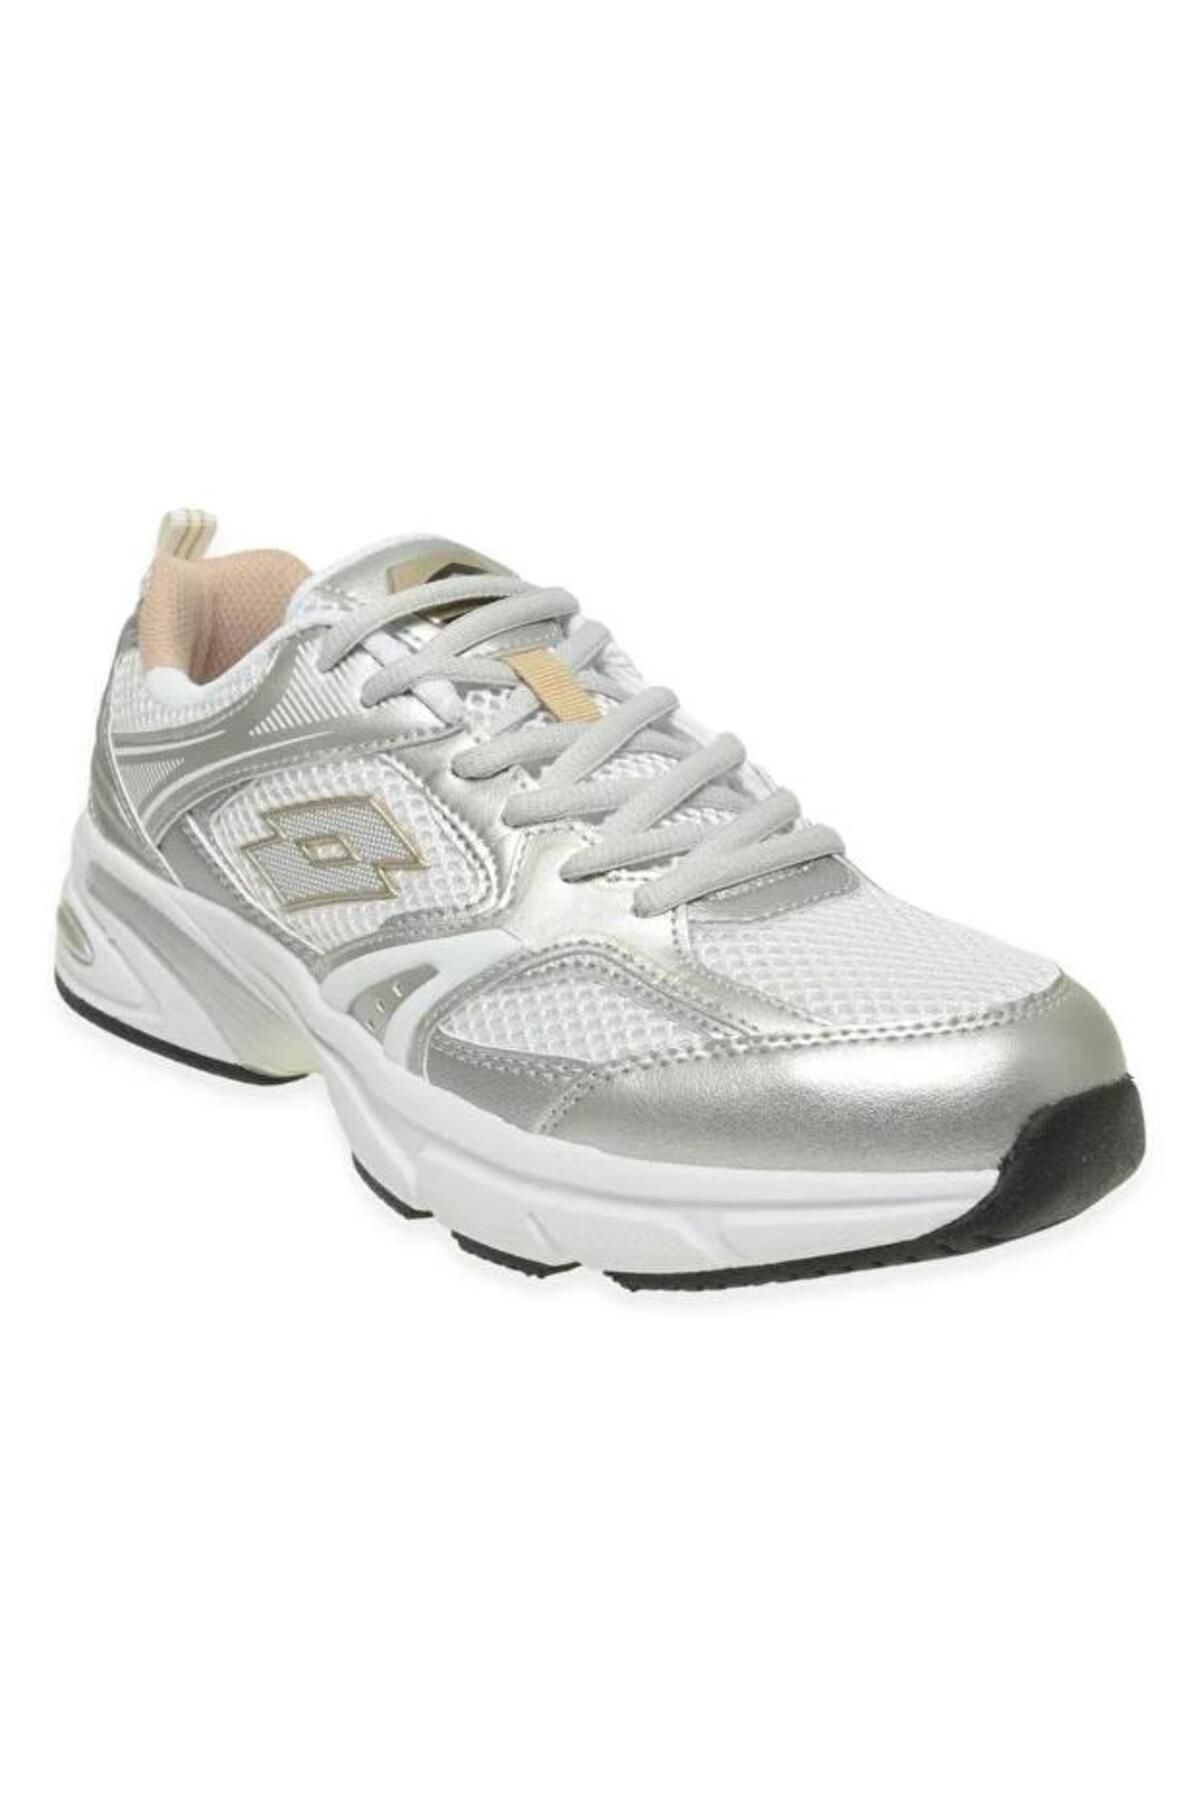 Lotto Kadın Gümüş Beyaz Athens Koşu Ayakkabısı